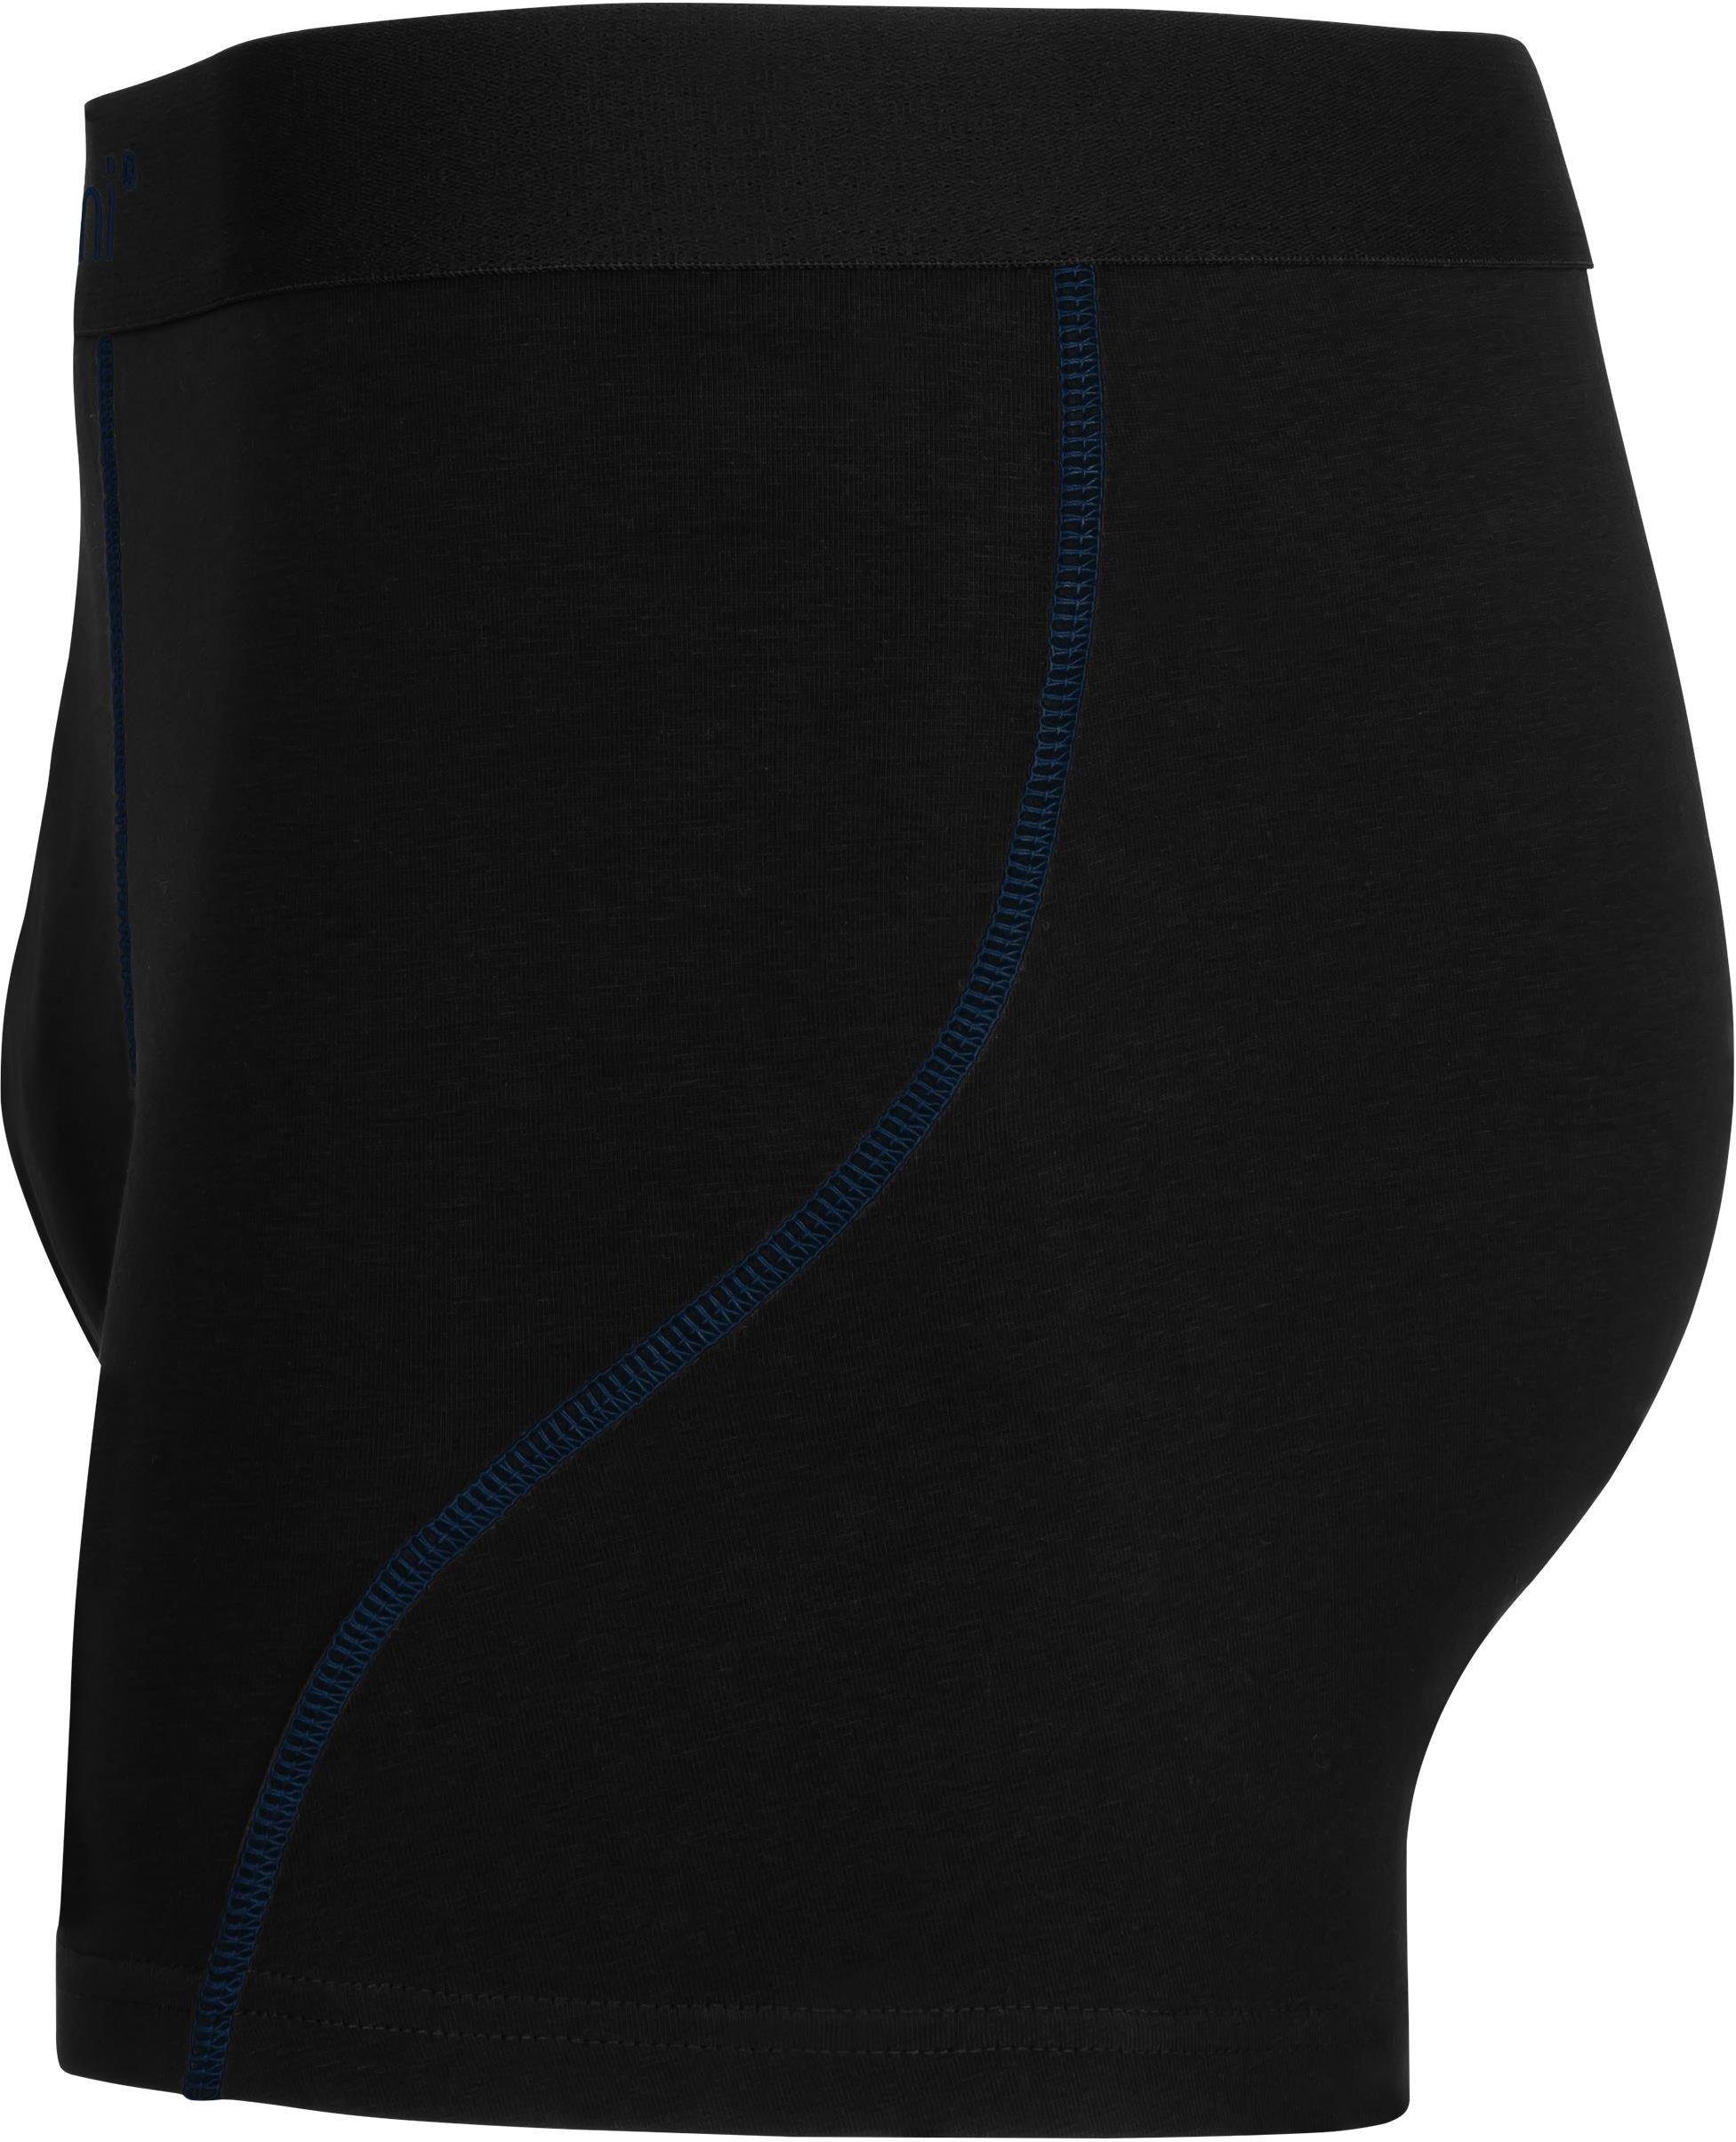 Boxershorts aus Baumwolle normani Männer Unterhose atmungsaktiver für x Dunkelblau/Hellblau/Türkis Baumwoll-Boxershorts 12 Herren